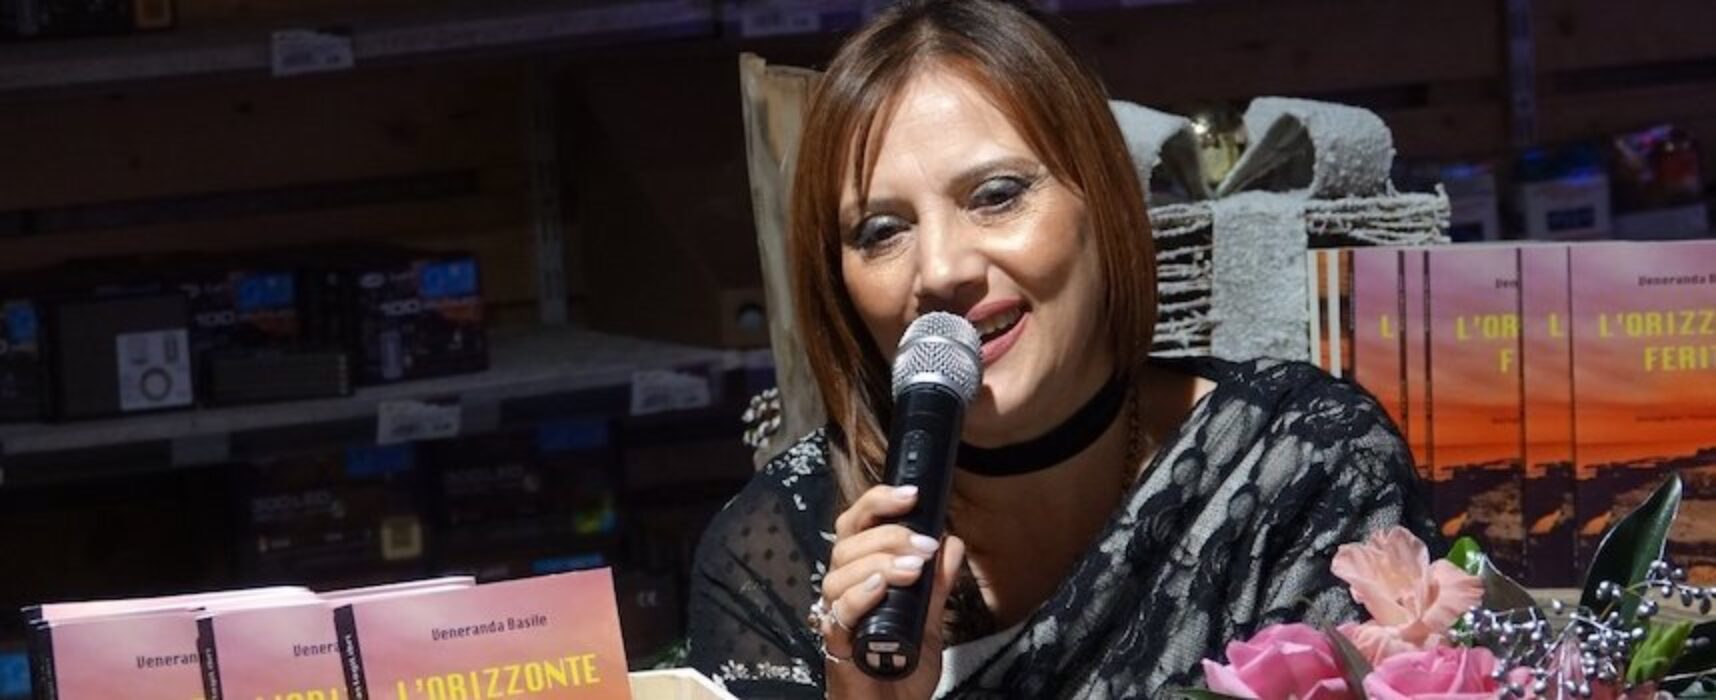 Veneranda Basile presenta il suo romanzo alle Vecchie Segherie Mastrototaro